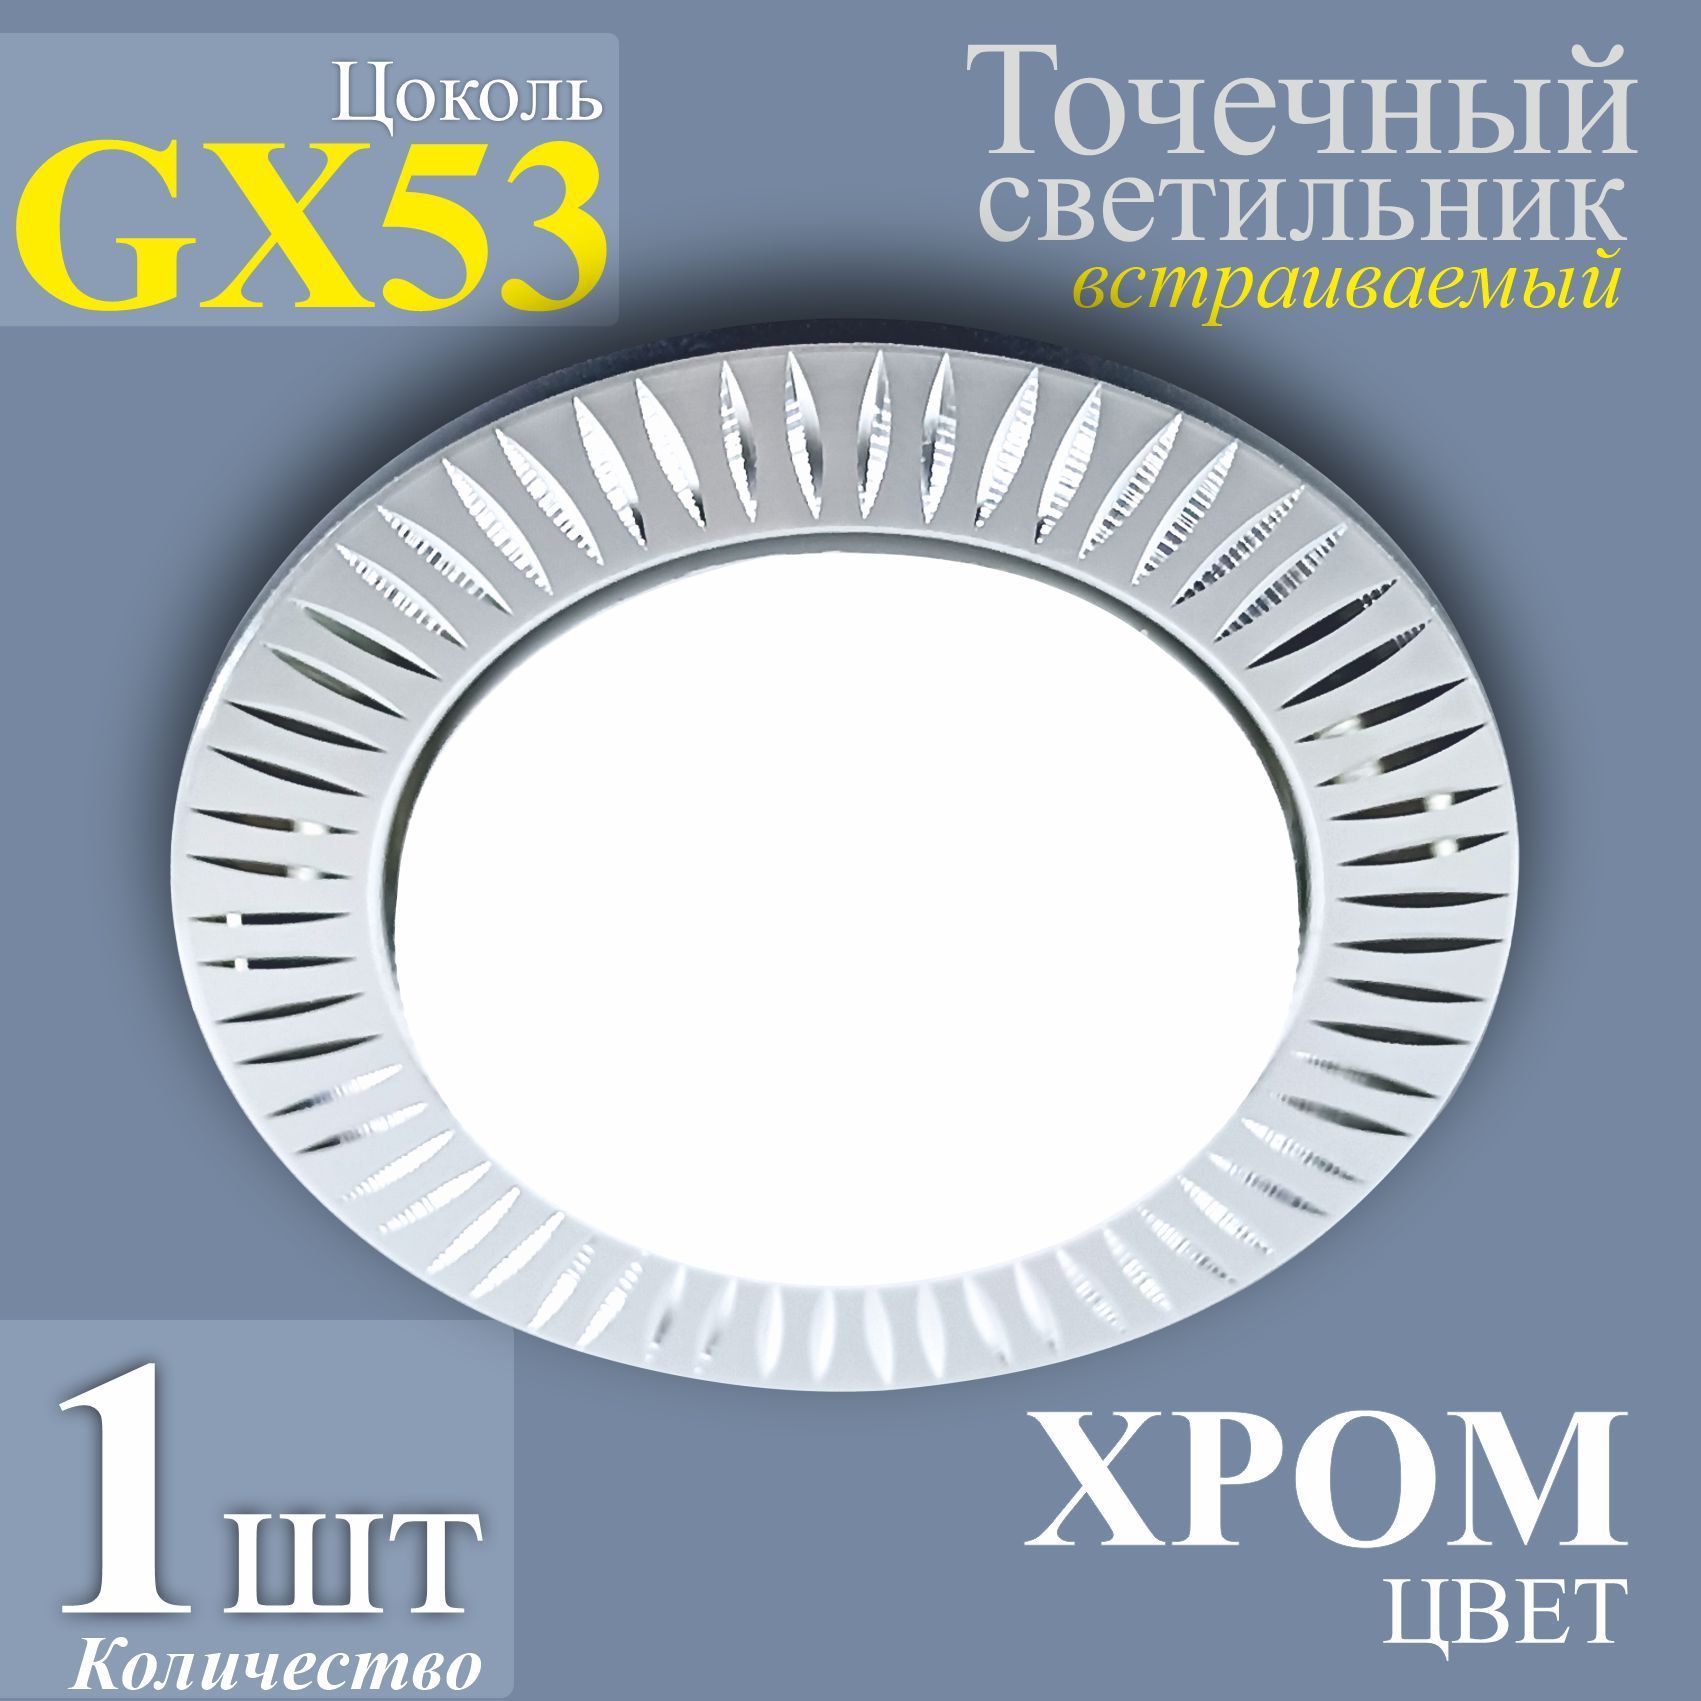 ТочечныйсветильниквстраиваемыйGX53хром-1шт.